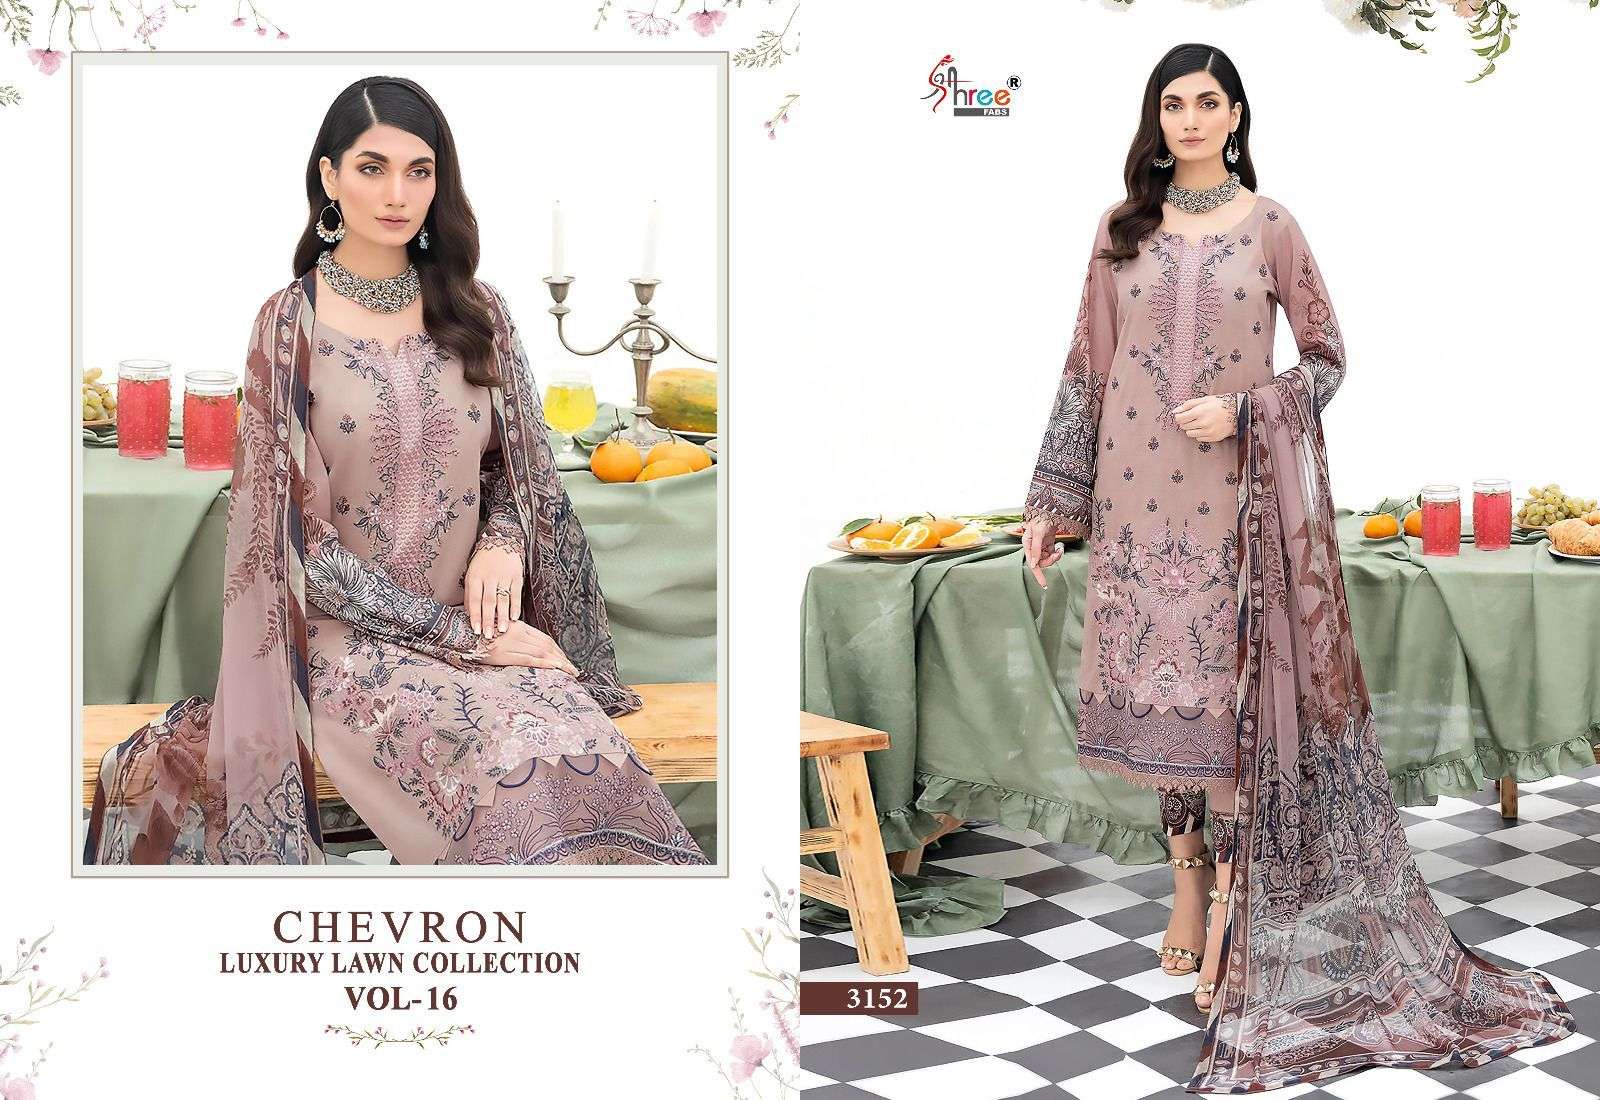 Shree Chevron Luxury Lawn Collection Vol 16 Cotton Dupatta Pakistani Suit Wholesale catalog